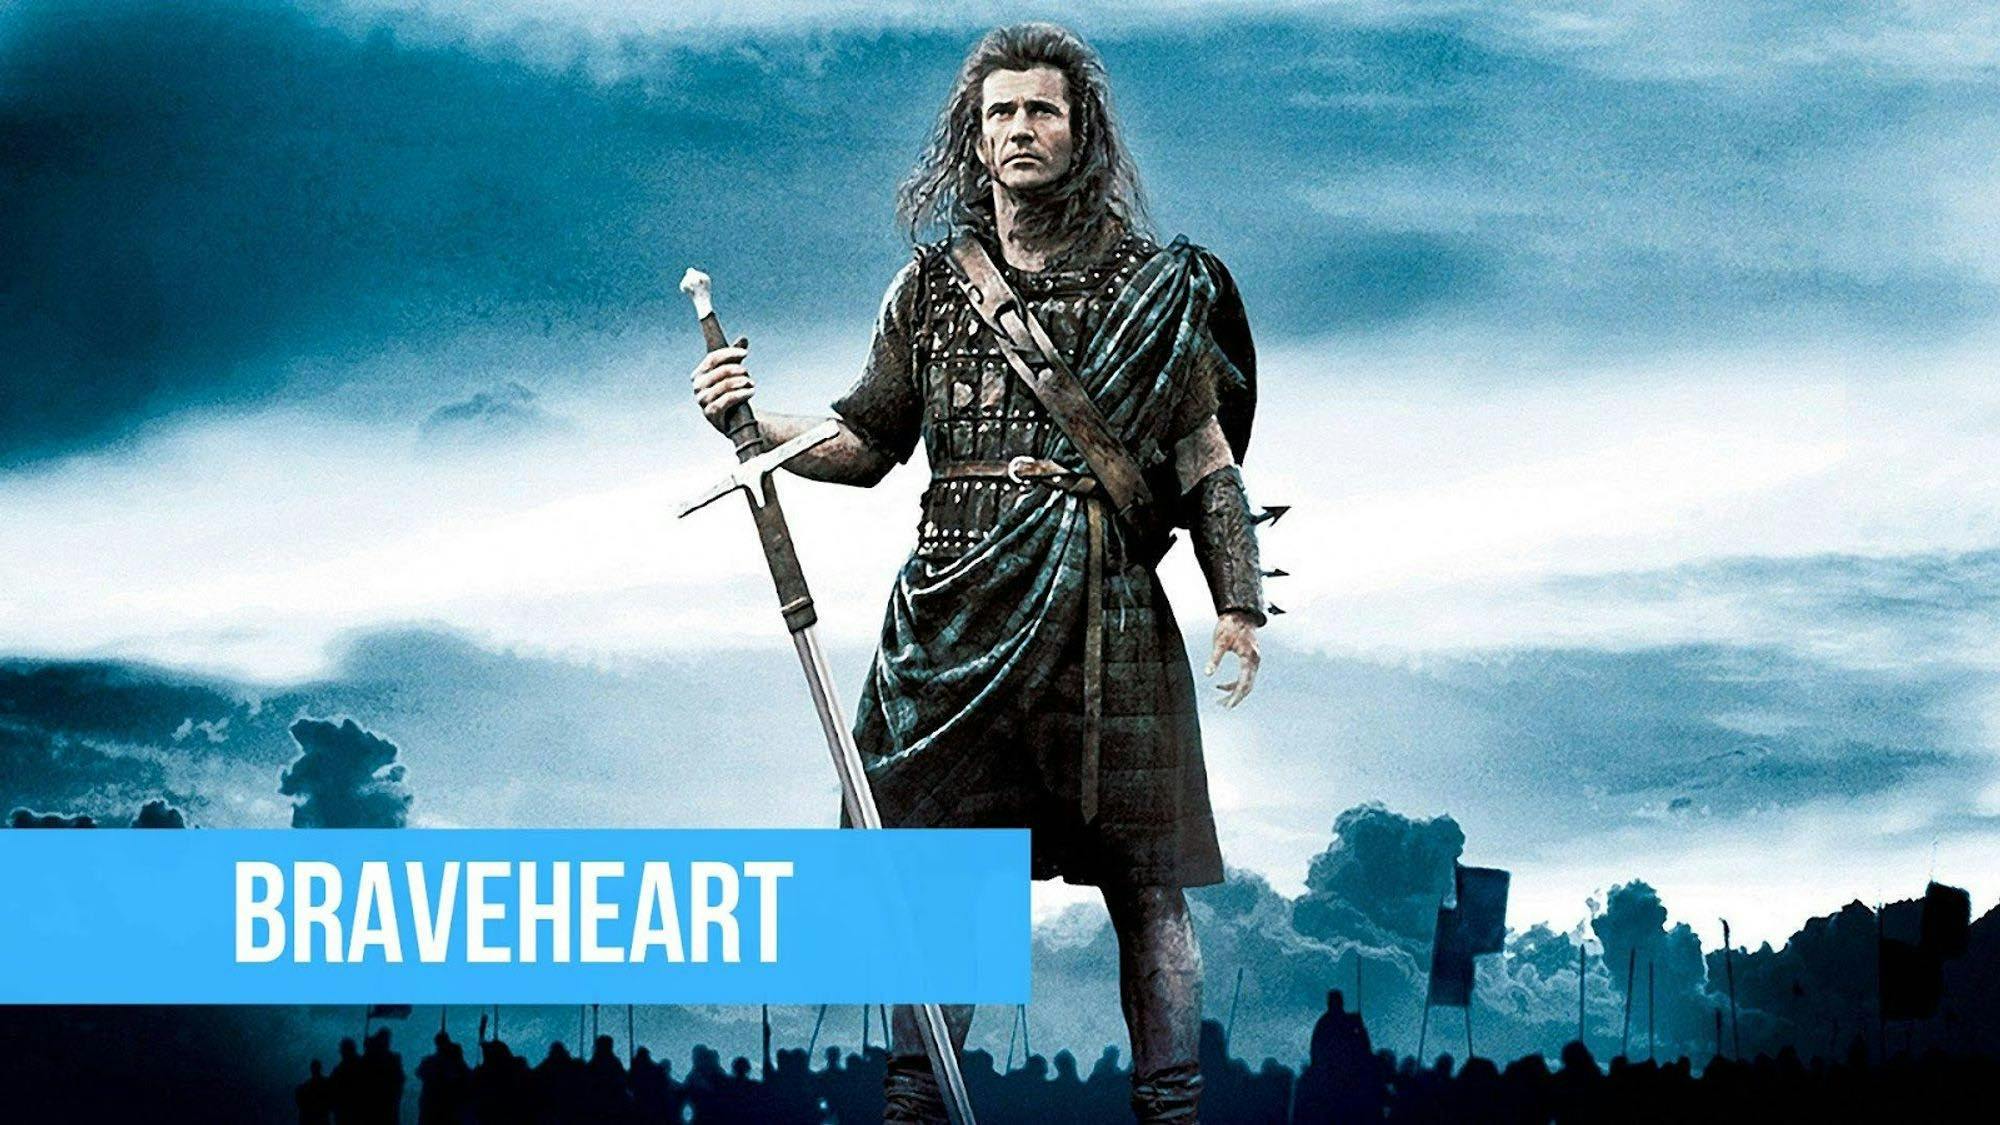 poster du film Braveheart avec le personnage principal William Wallace avec un titre sur fond bleu